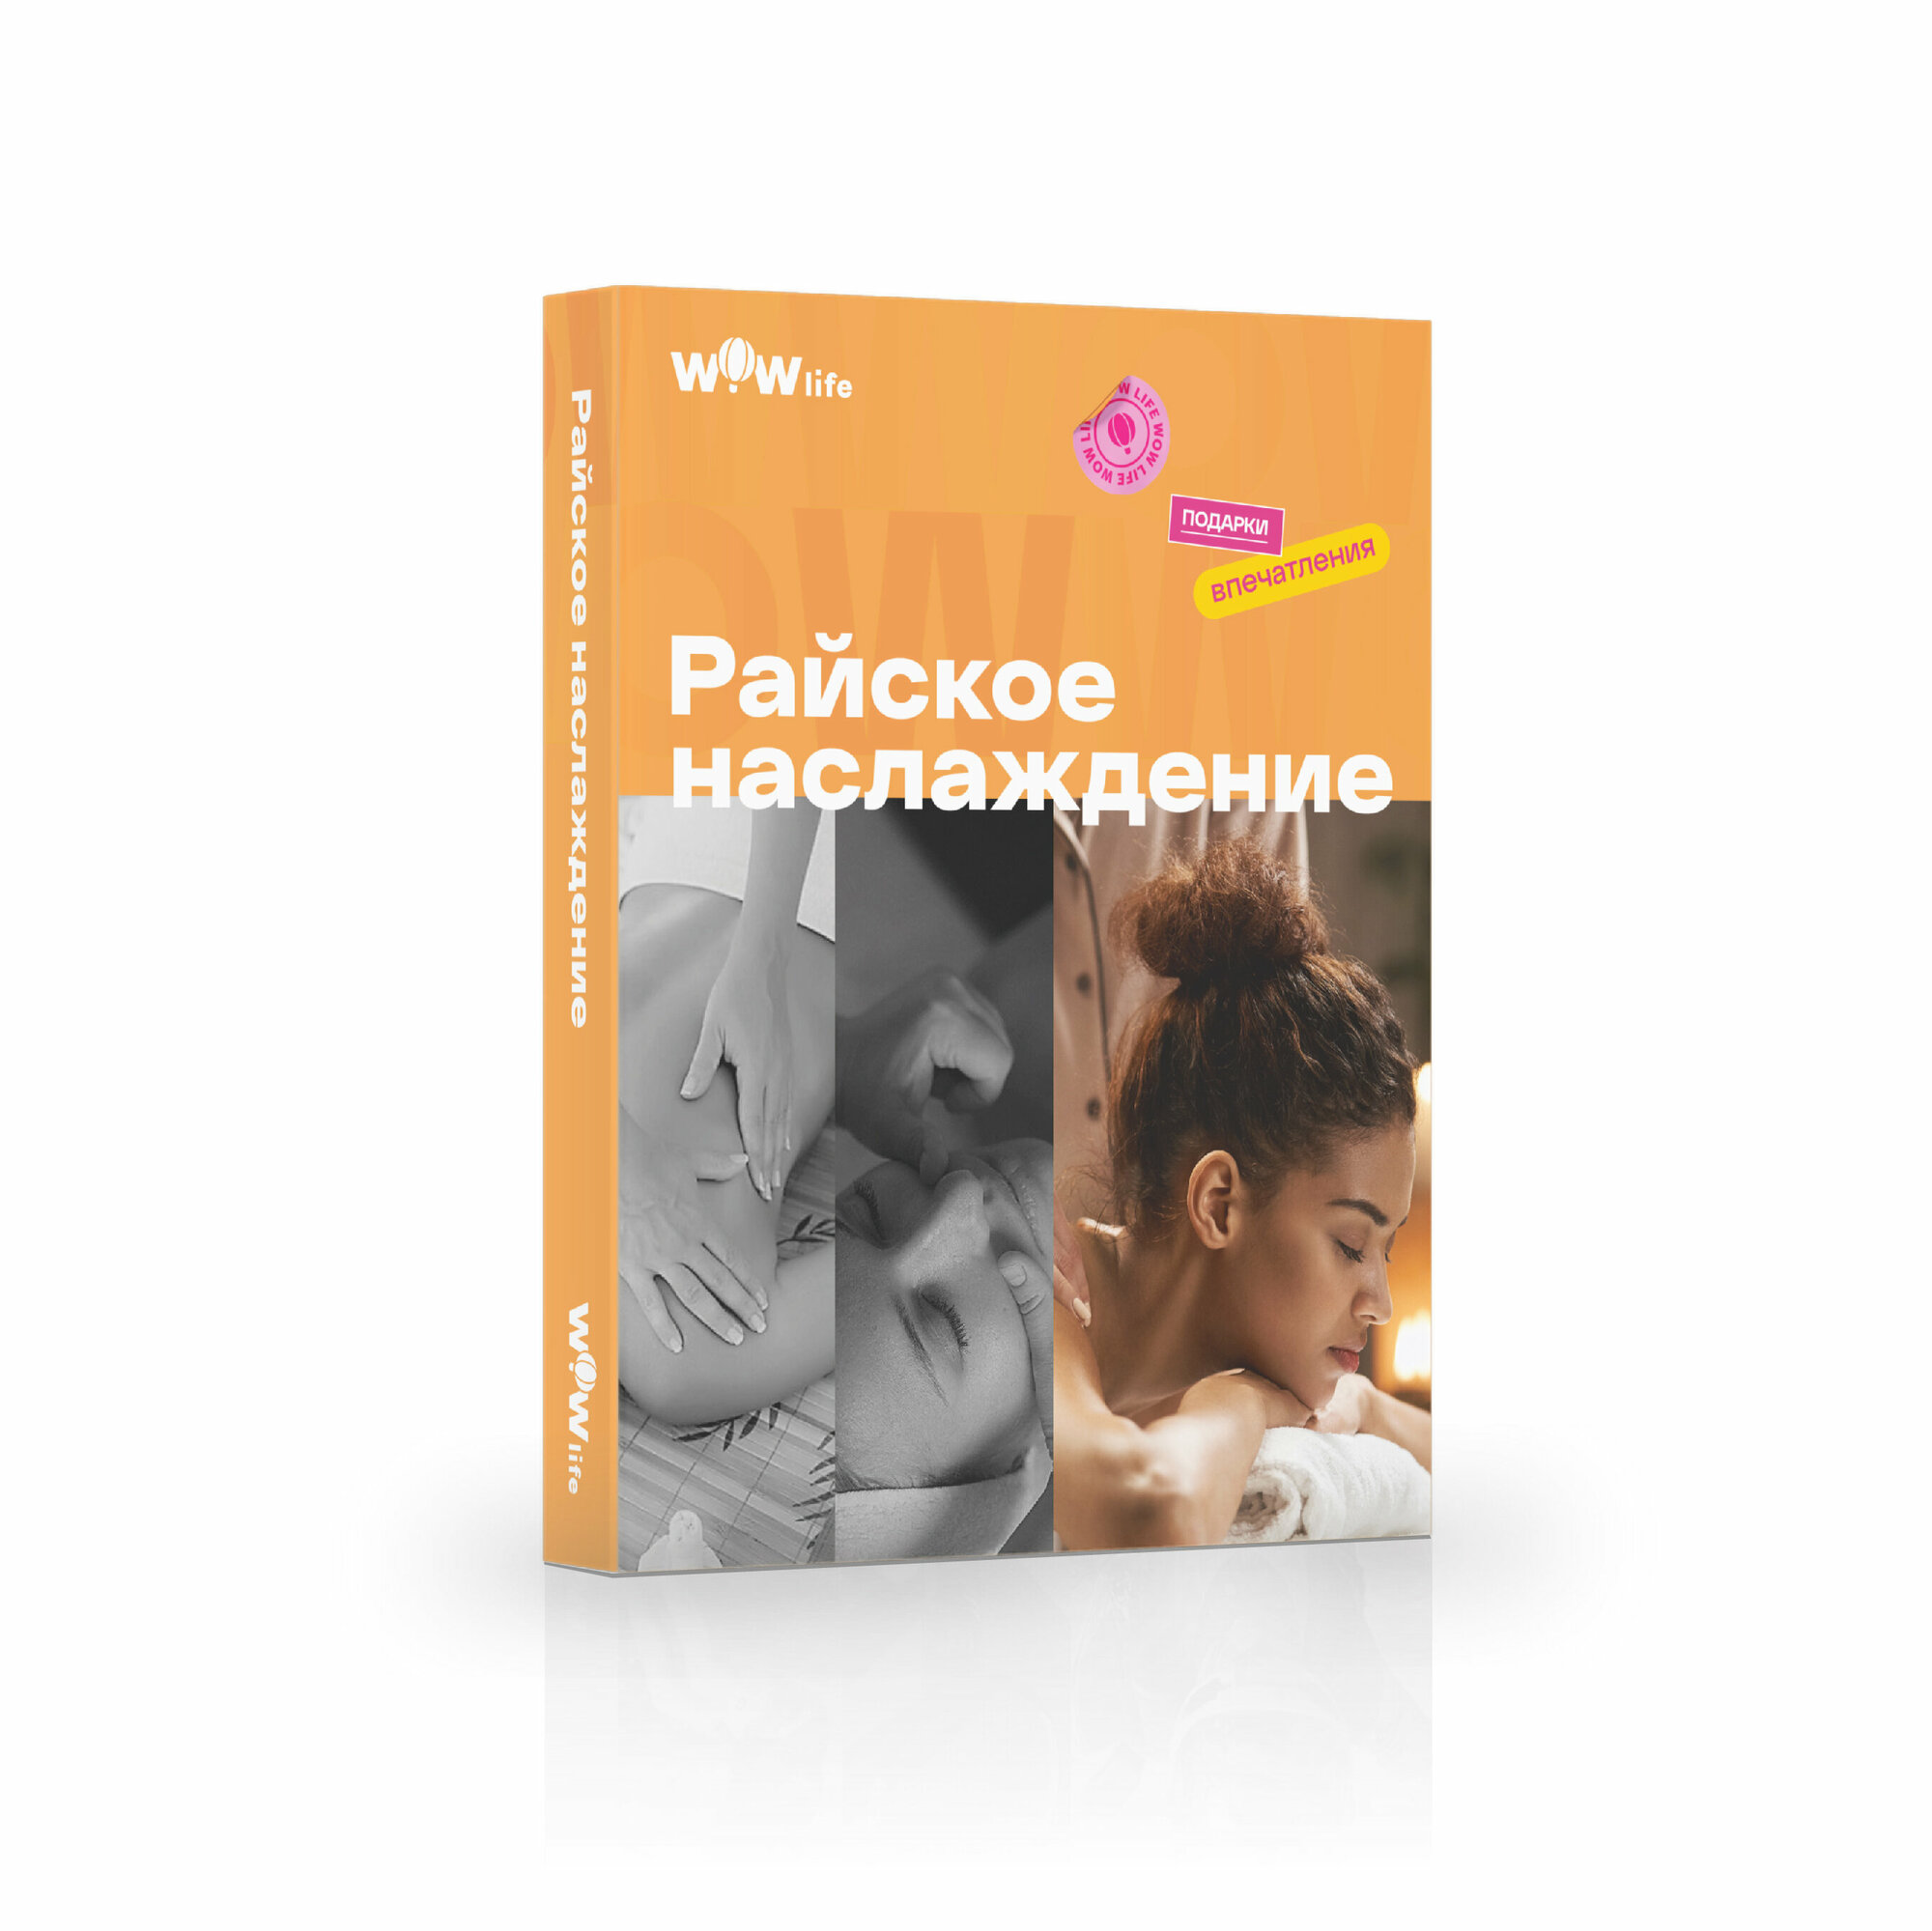 Подарочный сертификат WOWlife "Райское наслаждение" - набор из впечатлений на выбор, Санкт-Петербург